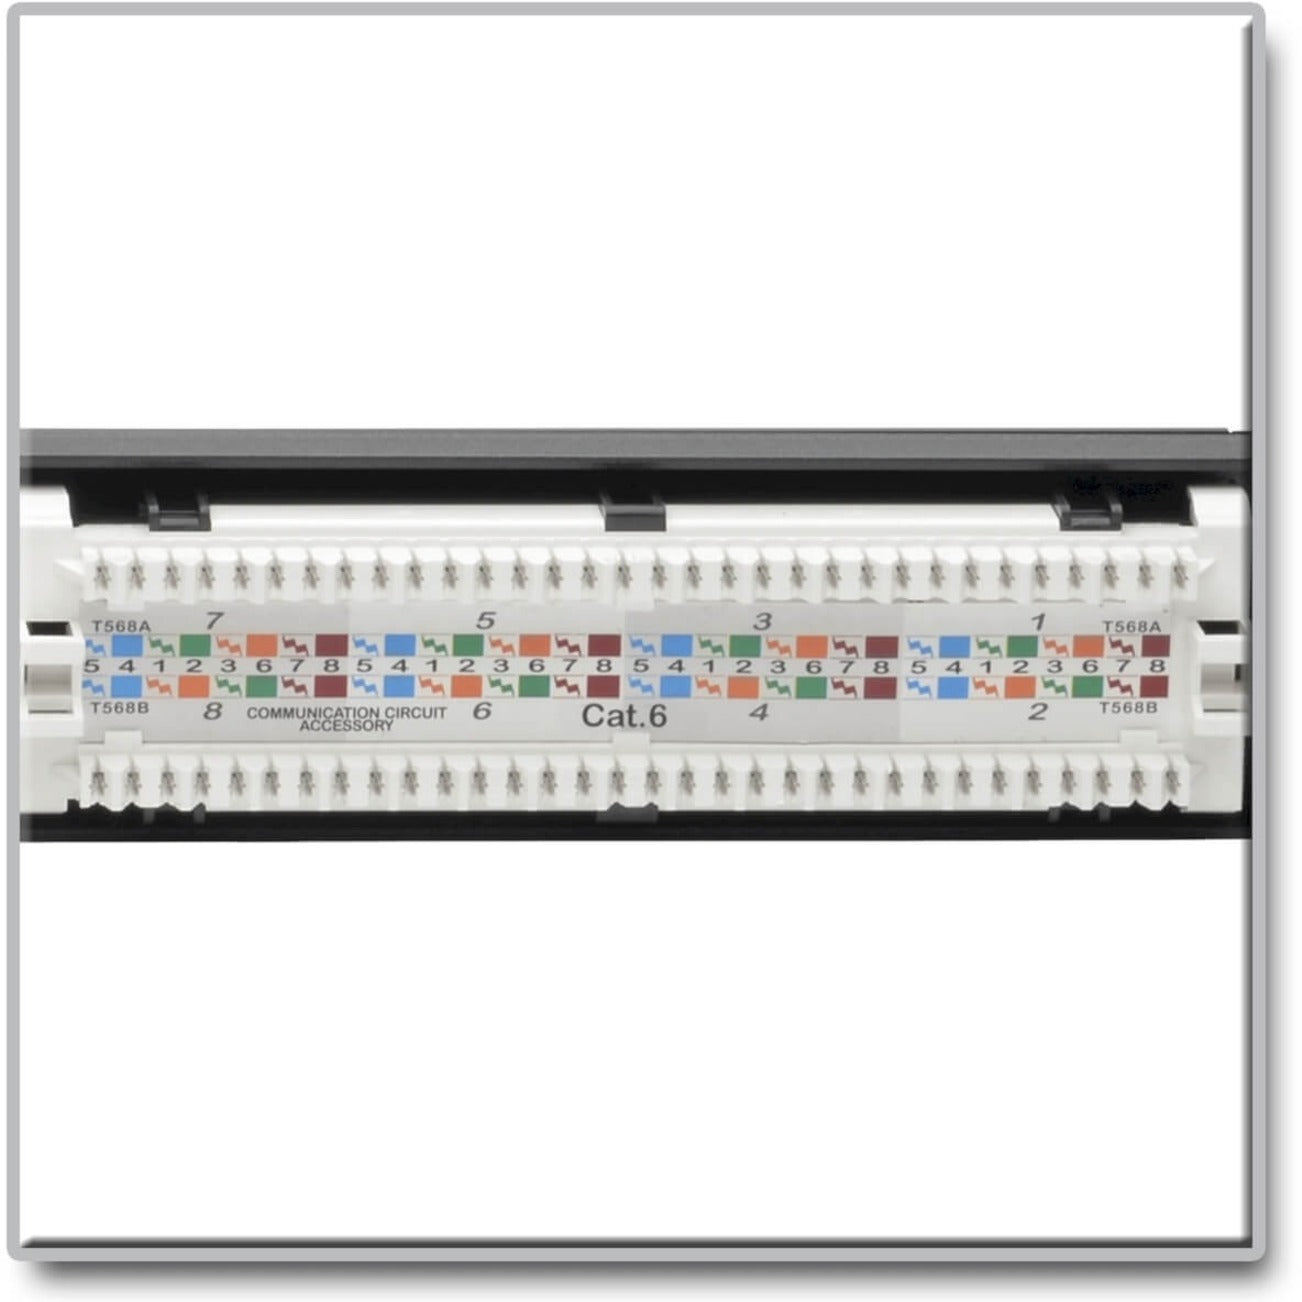 Tripp Lite N252-P24 24-Port 1U Rack-Mount Cat6 Patch Panel - PoE+ Compliant, TAA Compliant, Lifetime Warranty